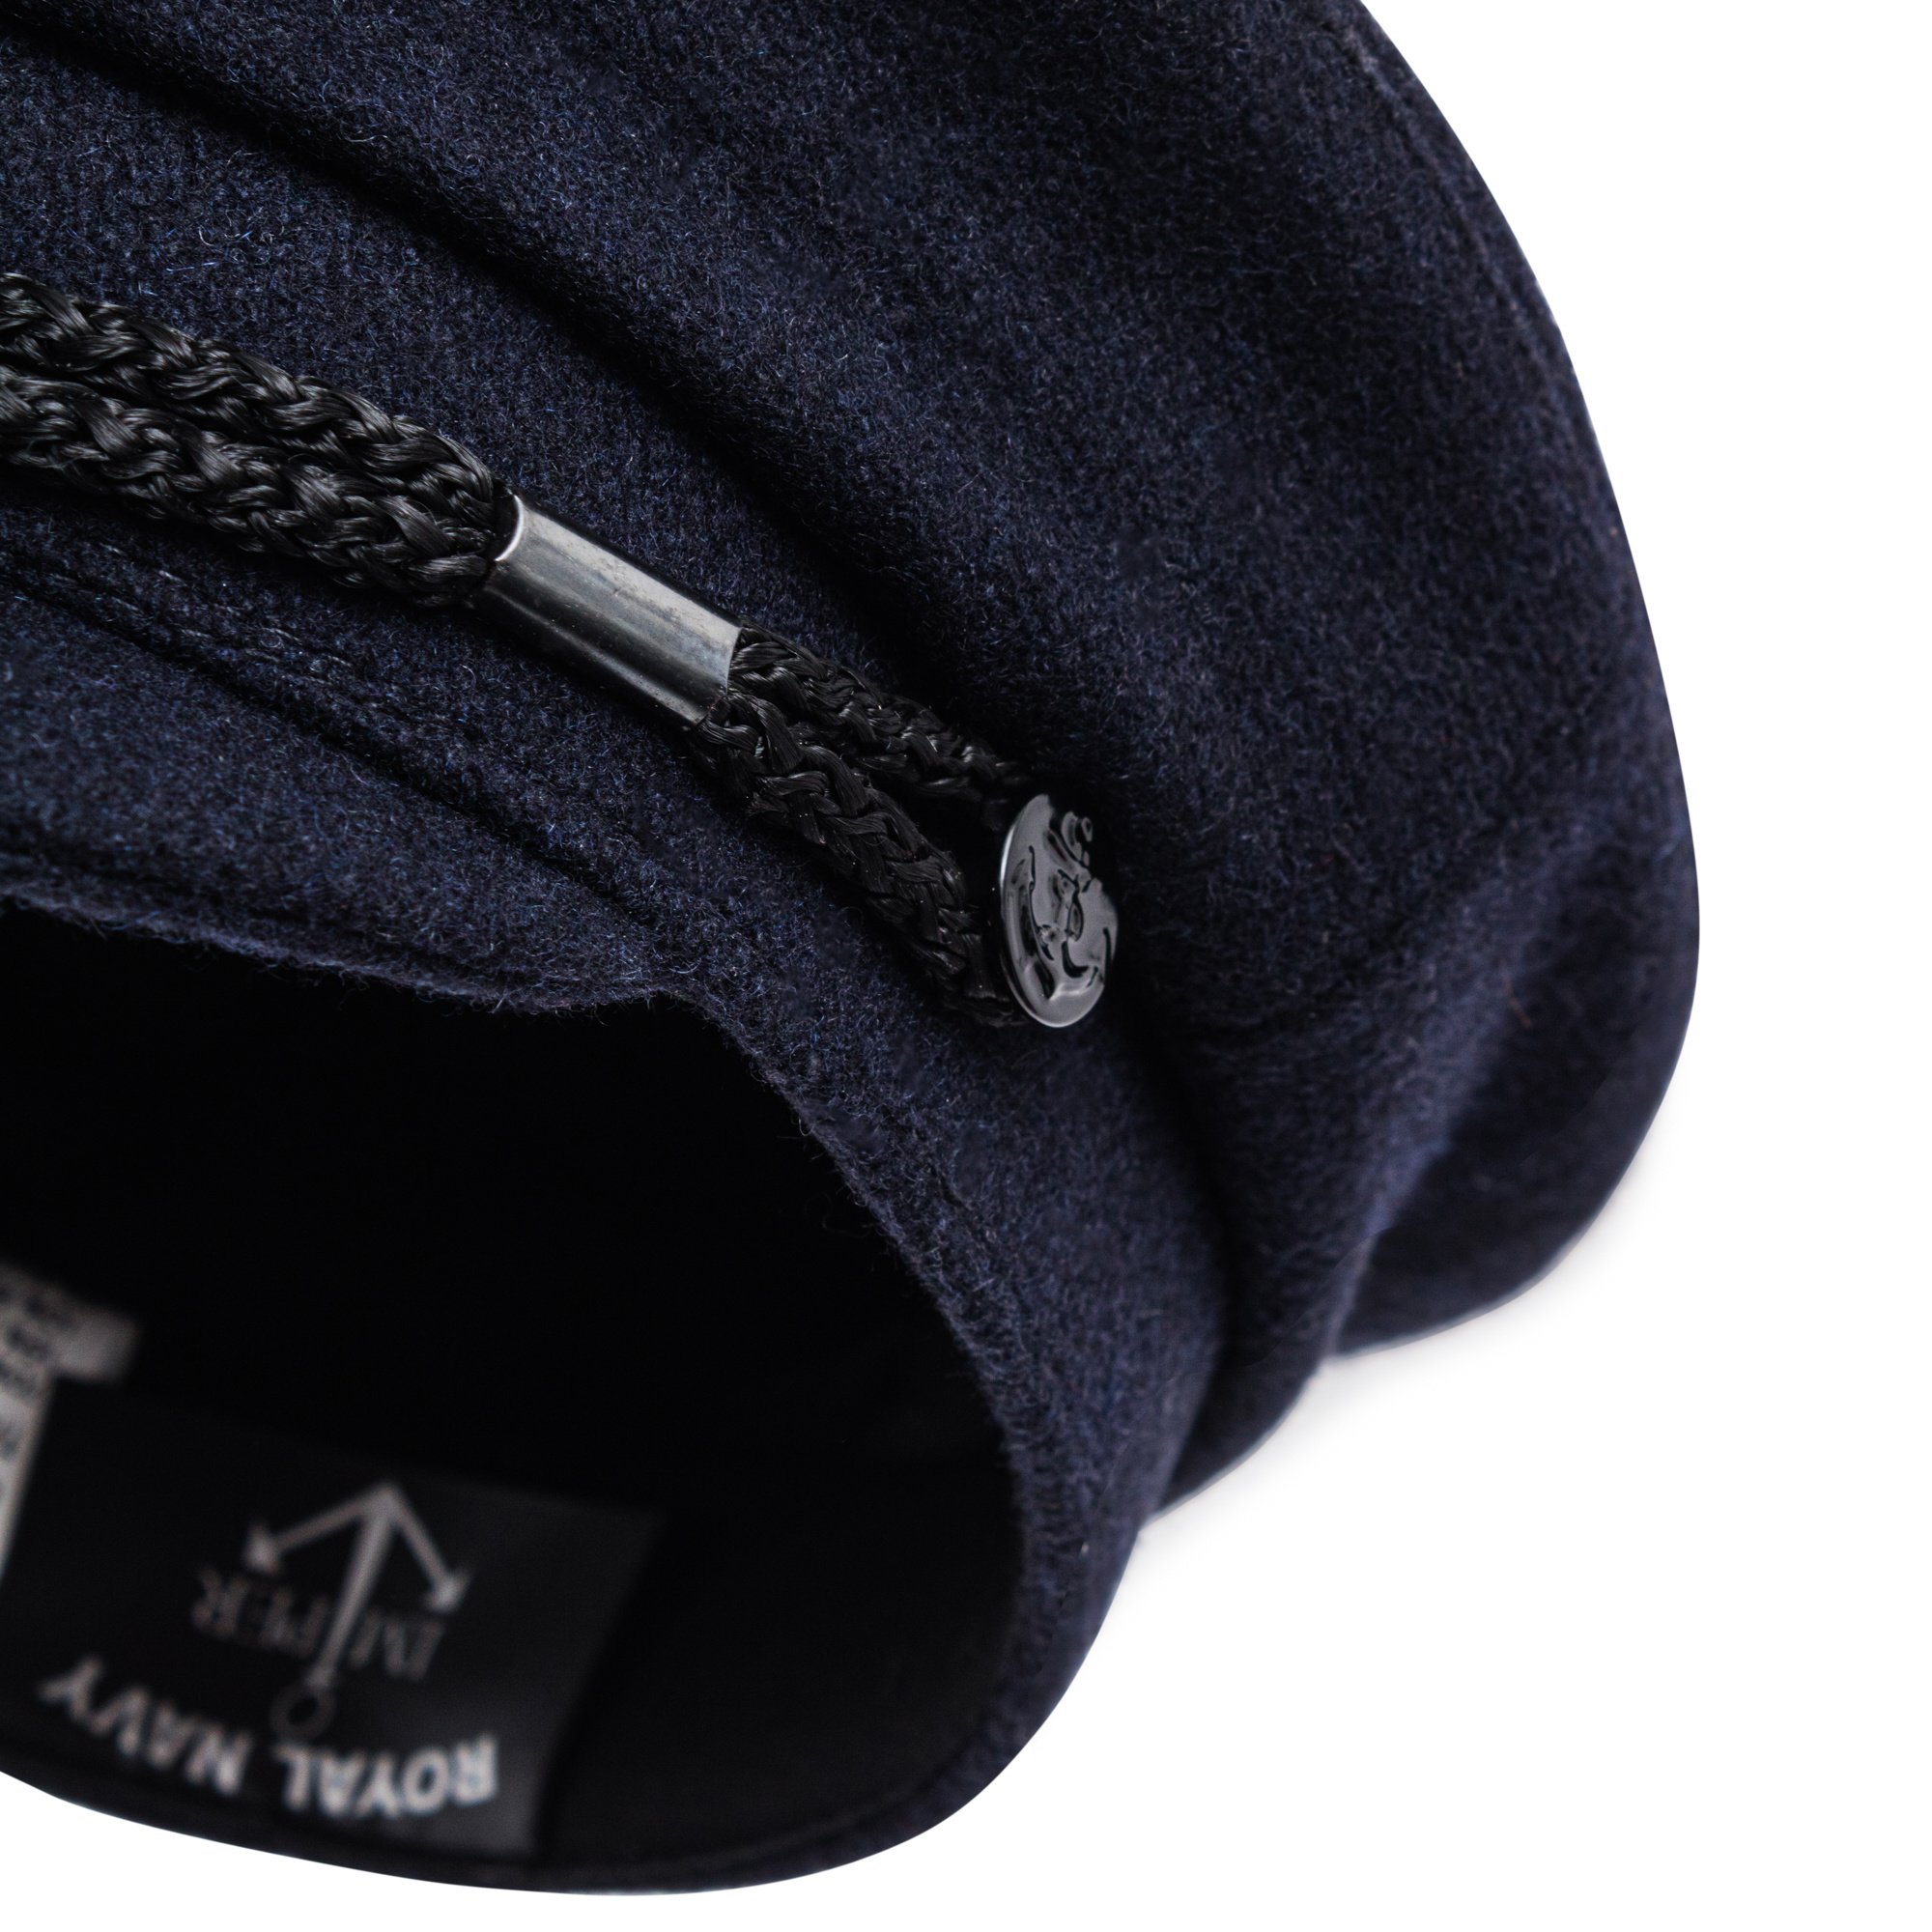 Chapeau / bonnet en laine Louis Vuitton Noir taille 58 cm en Laine